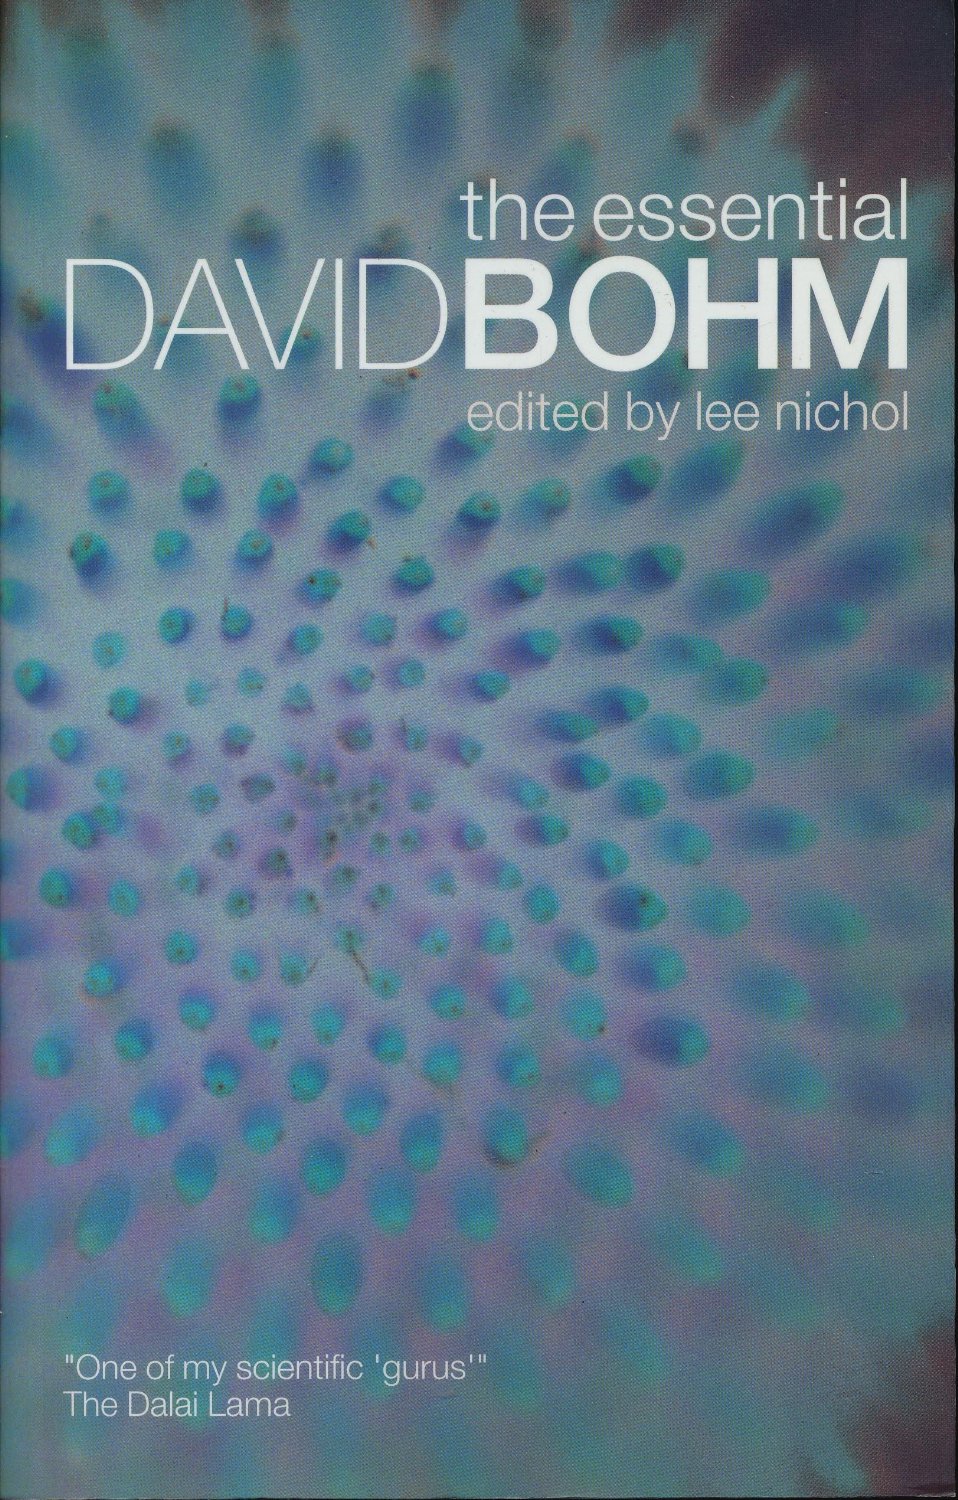 the essential David Bohm